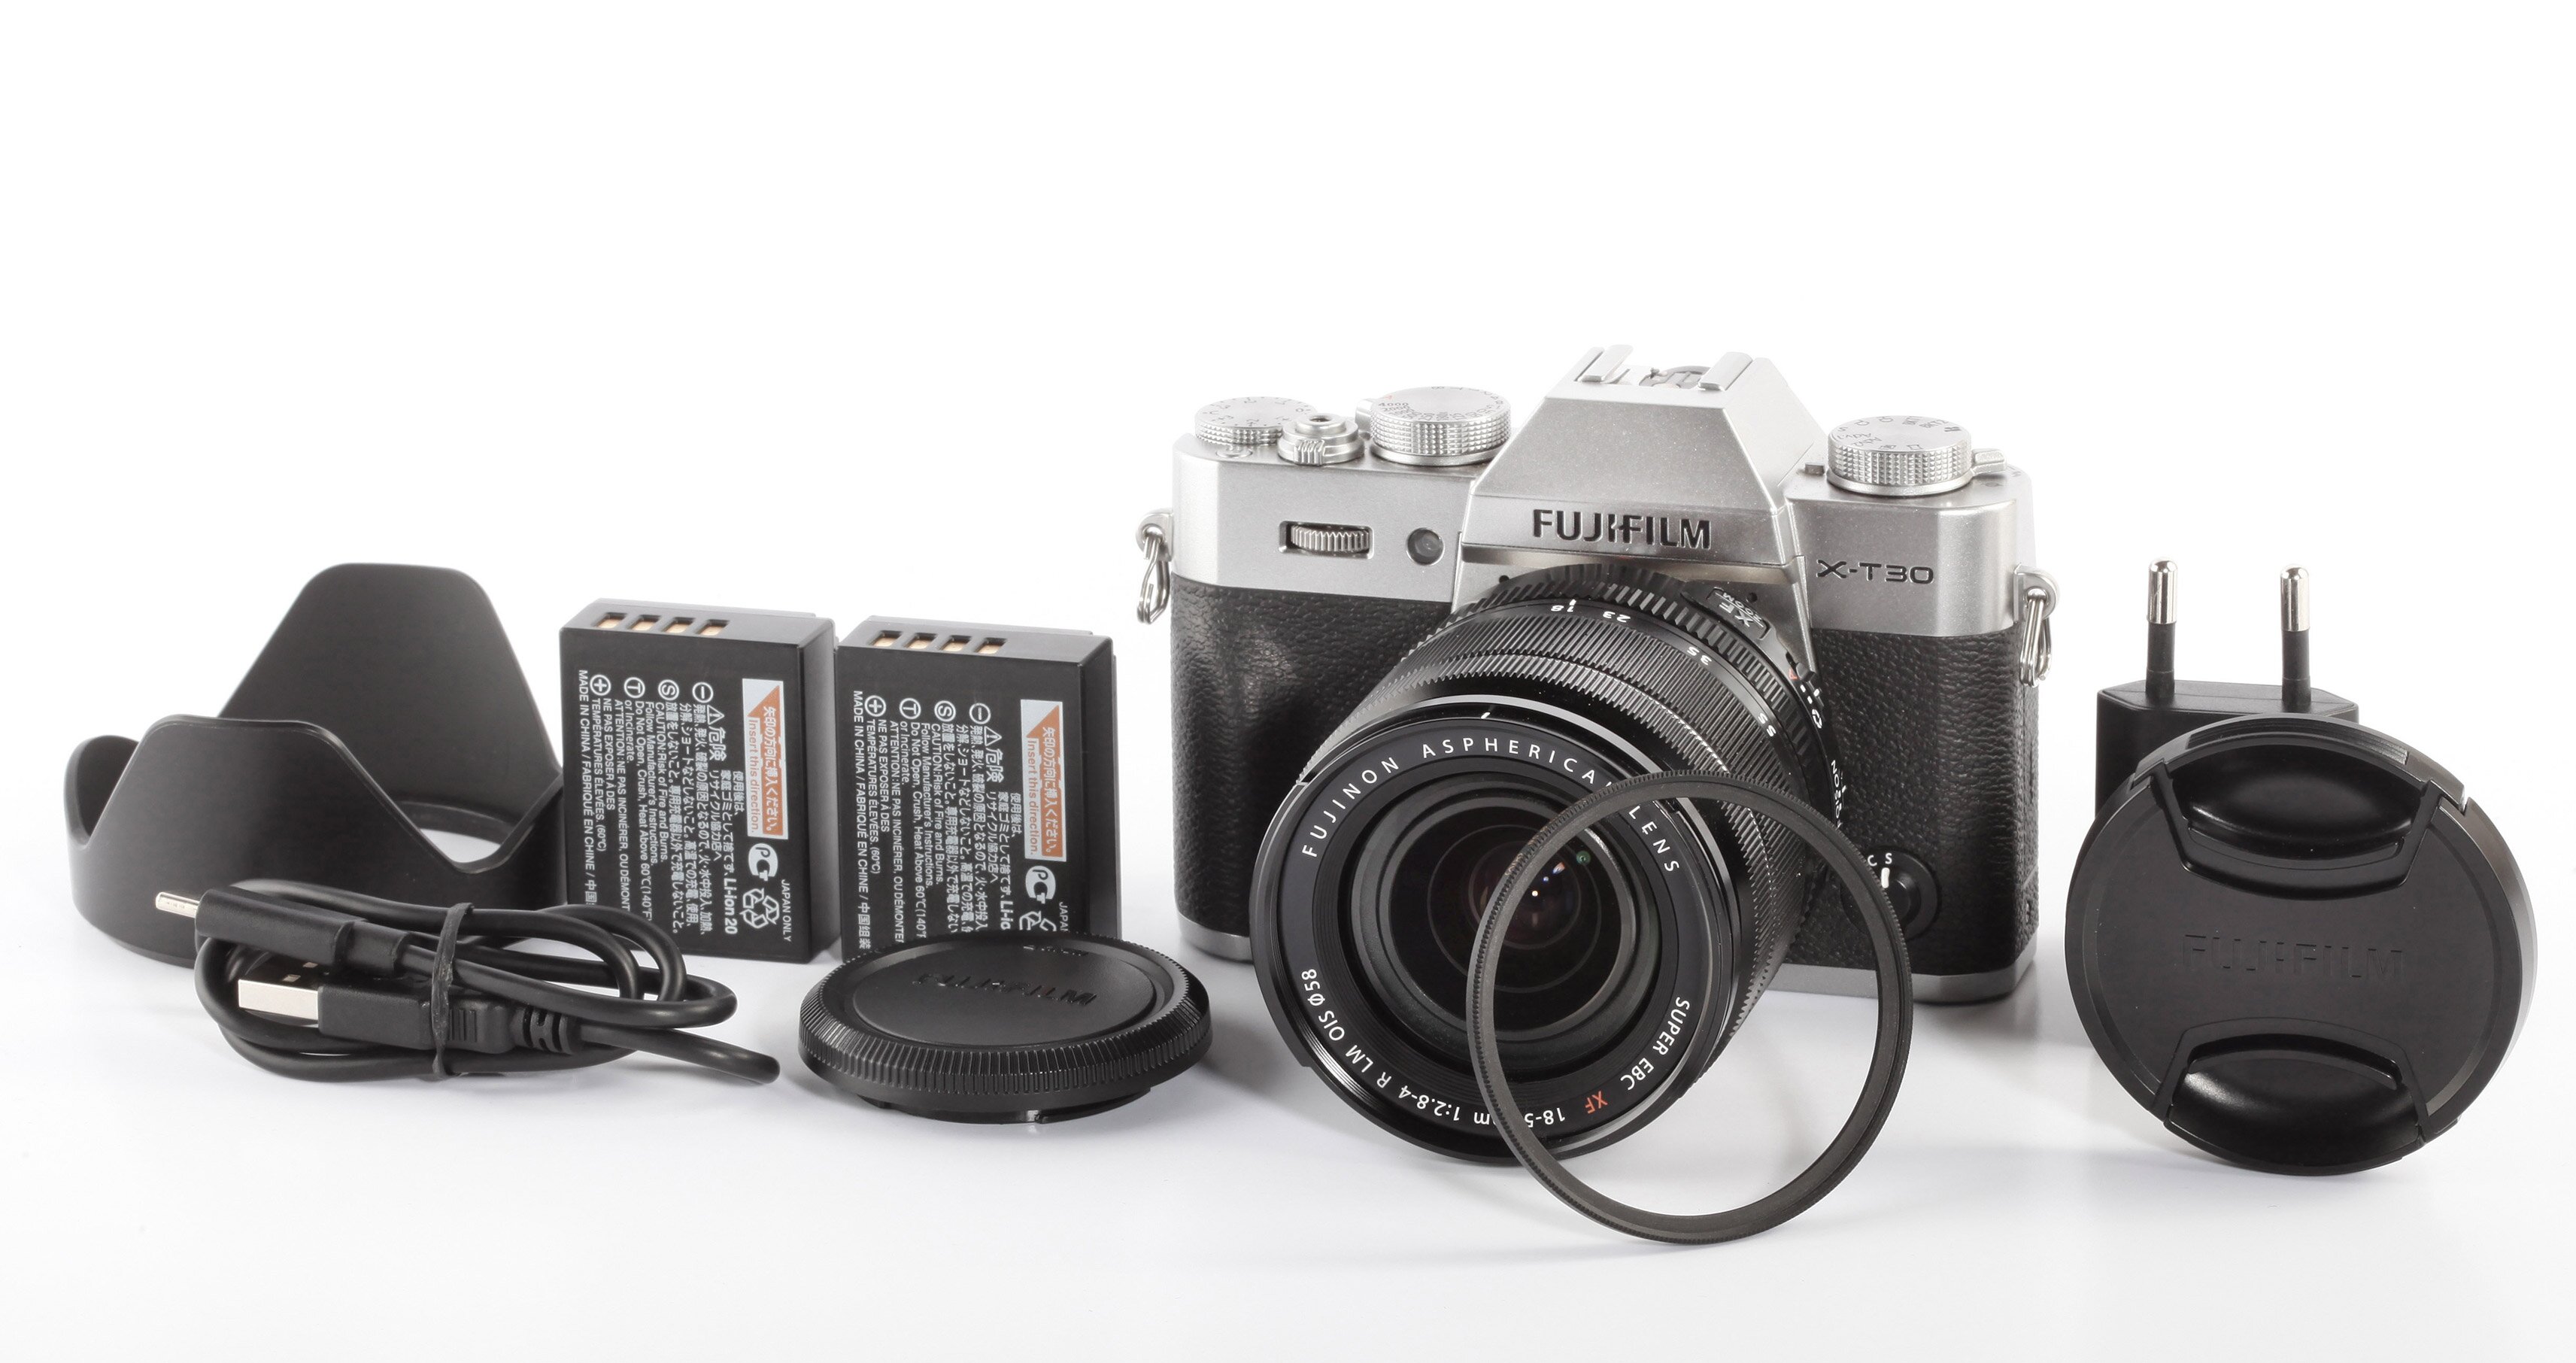 Fujifilm X-T30 chrom + Fujinon 18-55mm R LM OIS